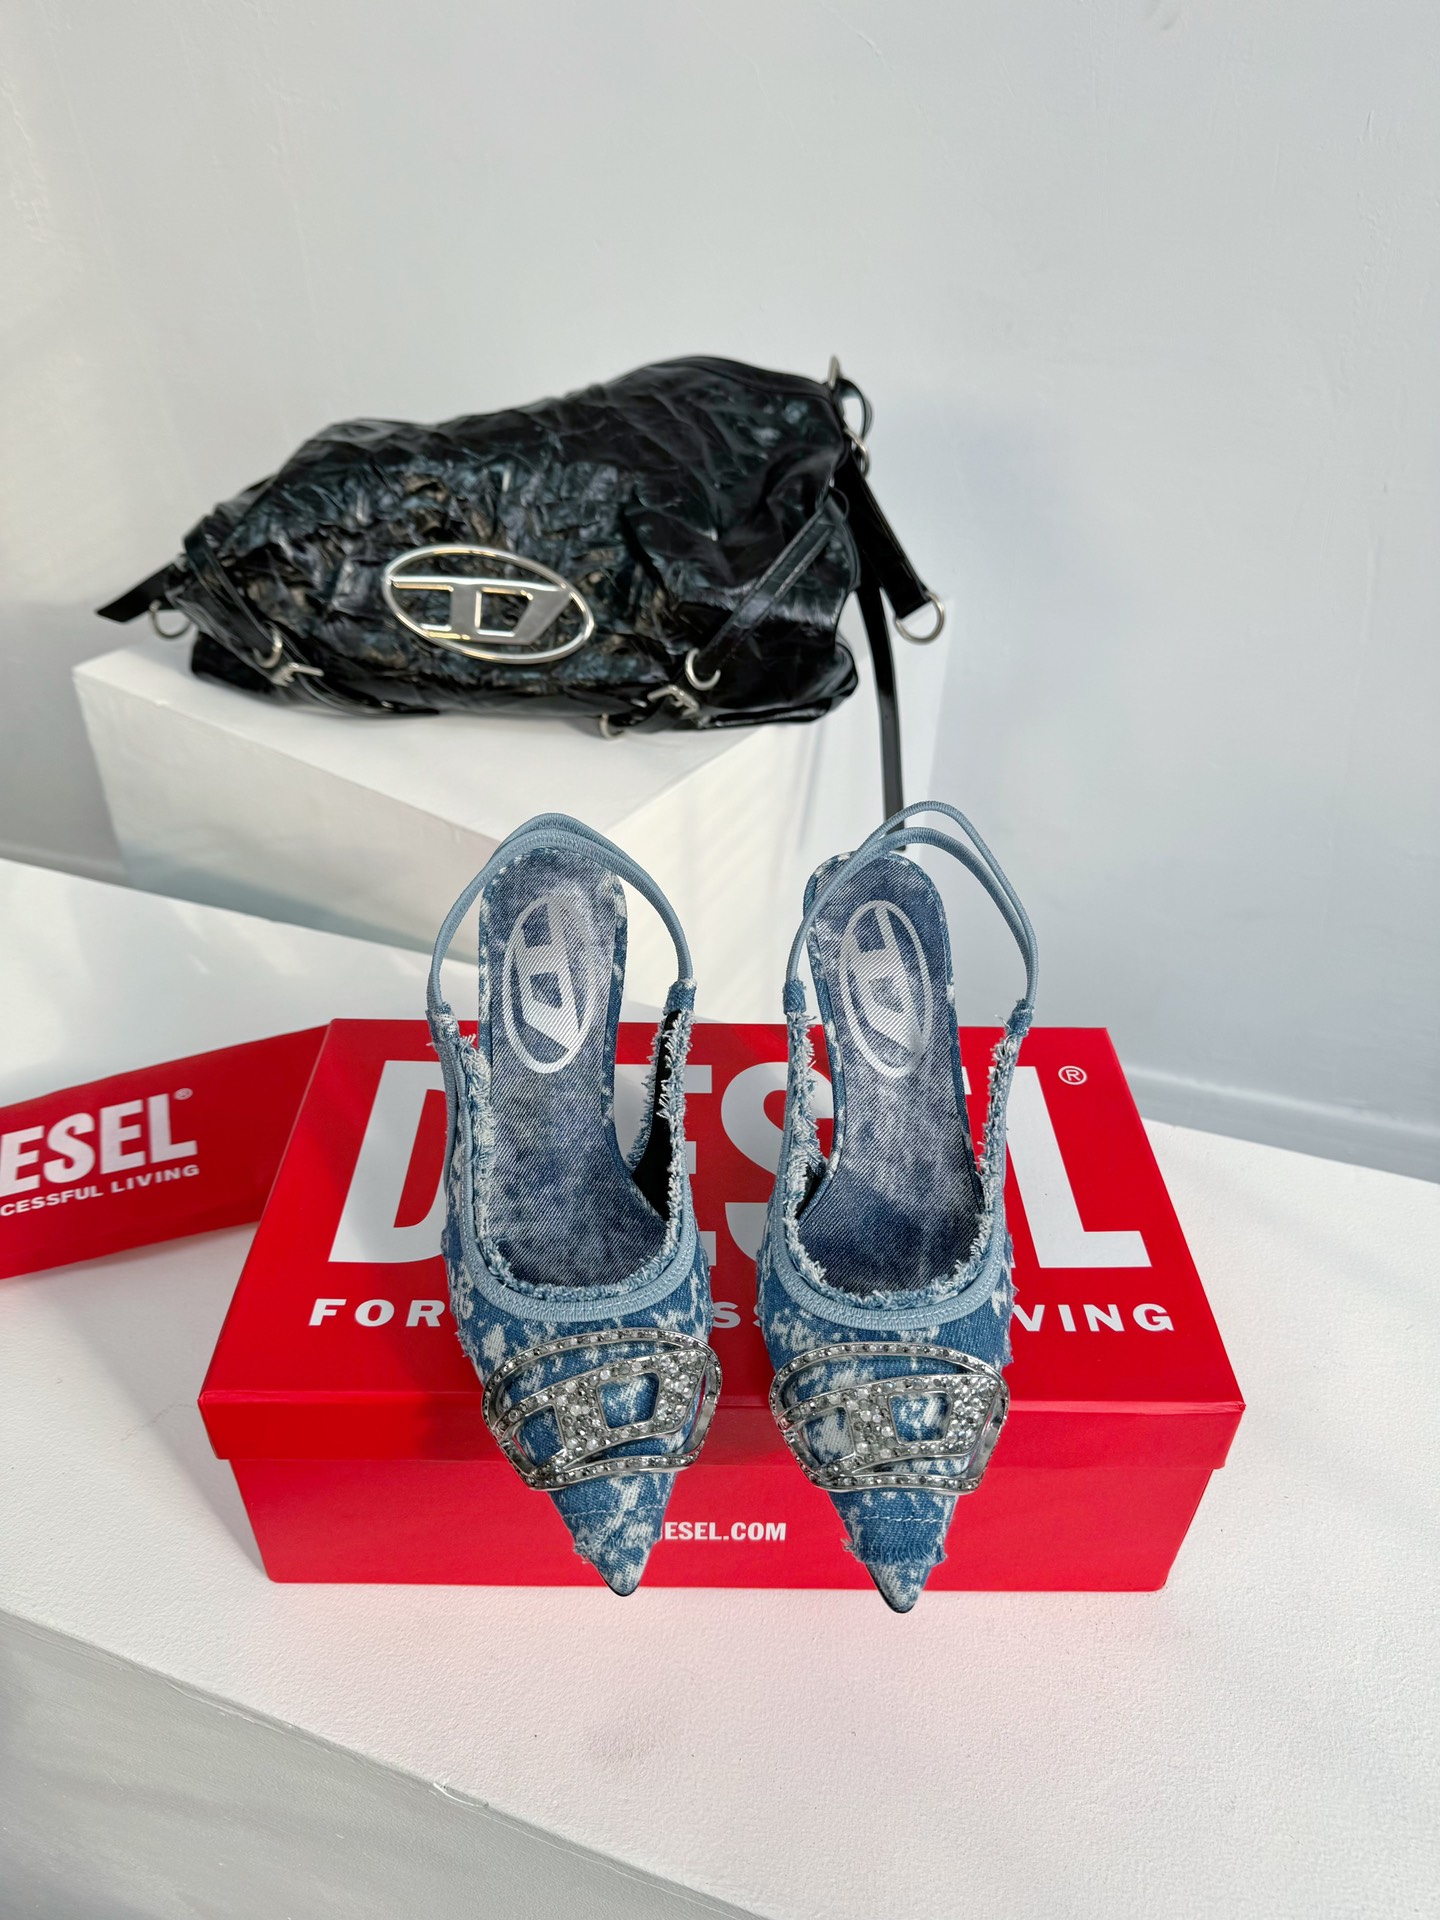 Diesel是意大利牛仔时装品牌DIESEL不仅是时尚服饰品牌它更代表一种生活方式2024年春夏新品Di